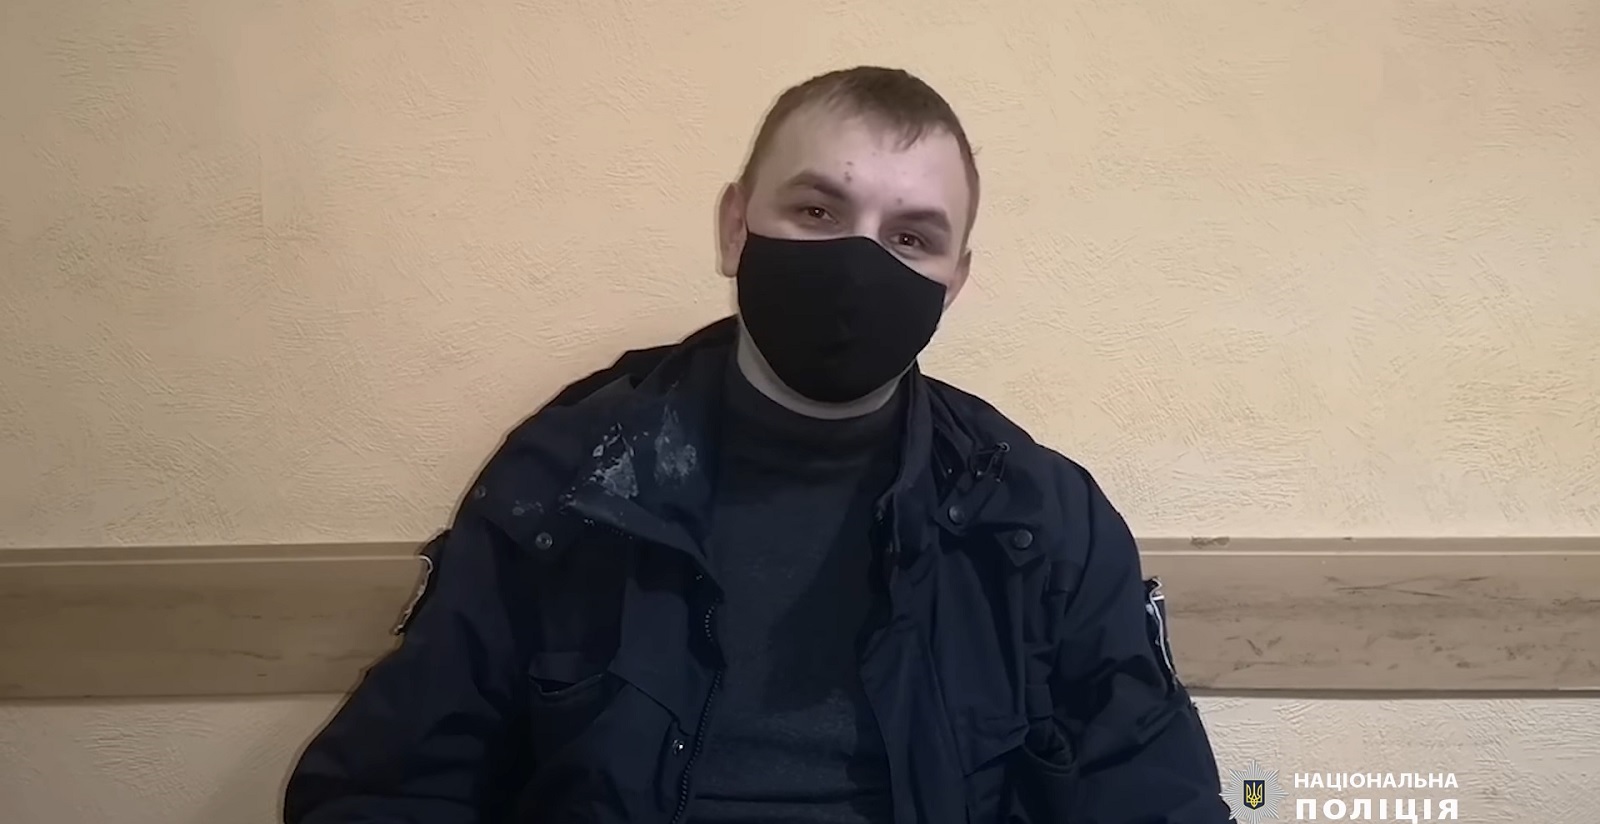 Срок за пранк: в Киеве парень бросил тарелку со взбитыми сливками в лицо полицейскому (видео)